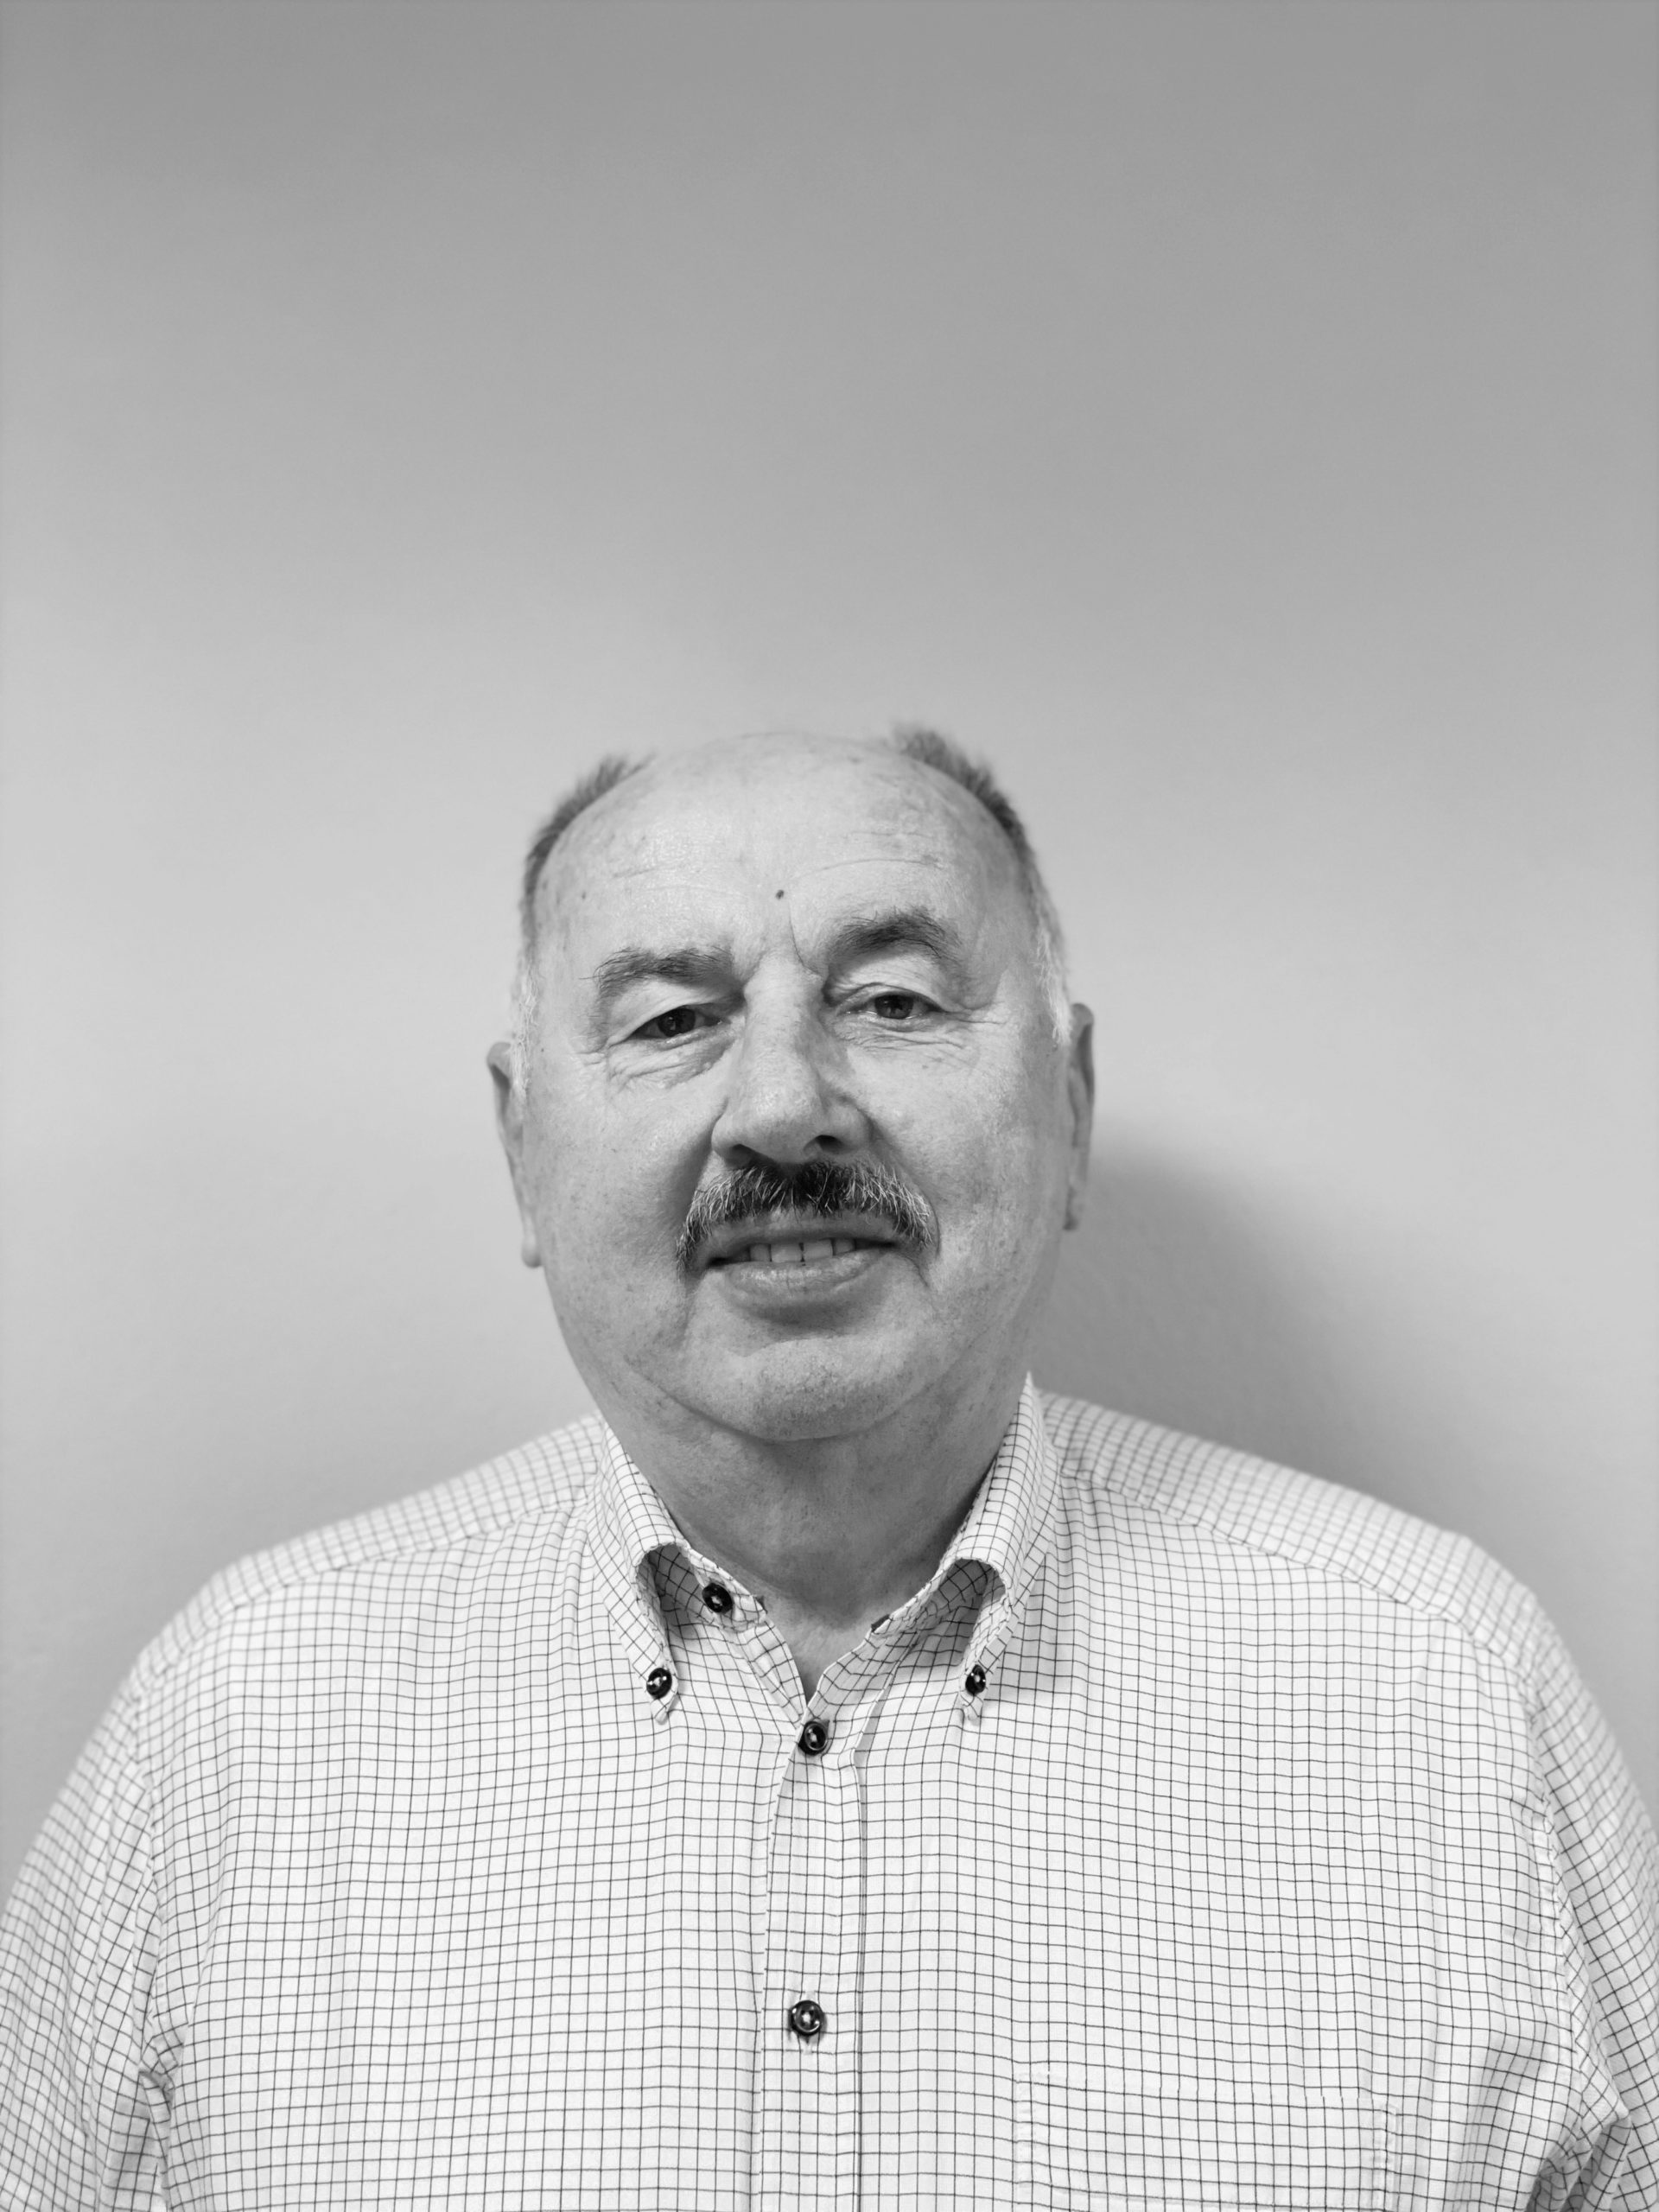 Portrét zamestnanca -Peter Kukučka, bezpečnostný technik, technik požiarnej ochrany a odborník v oblasti civilnej ochrany spoločnosti JKBOZ s.r.o.